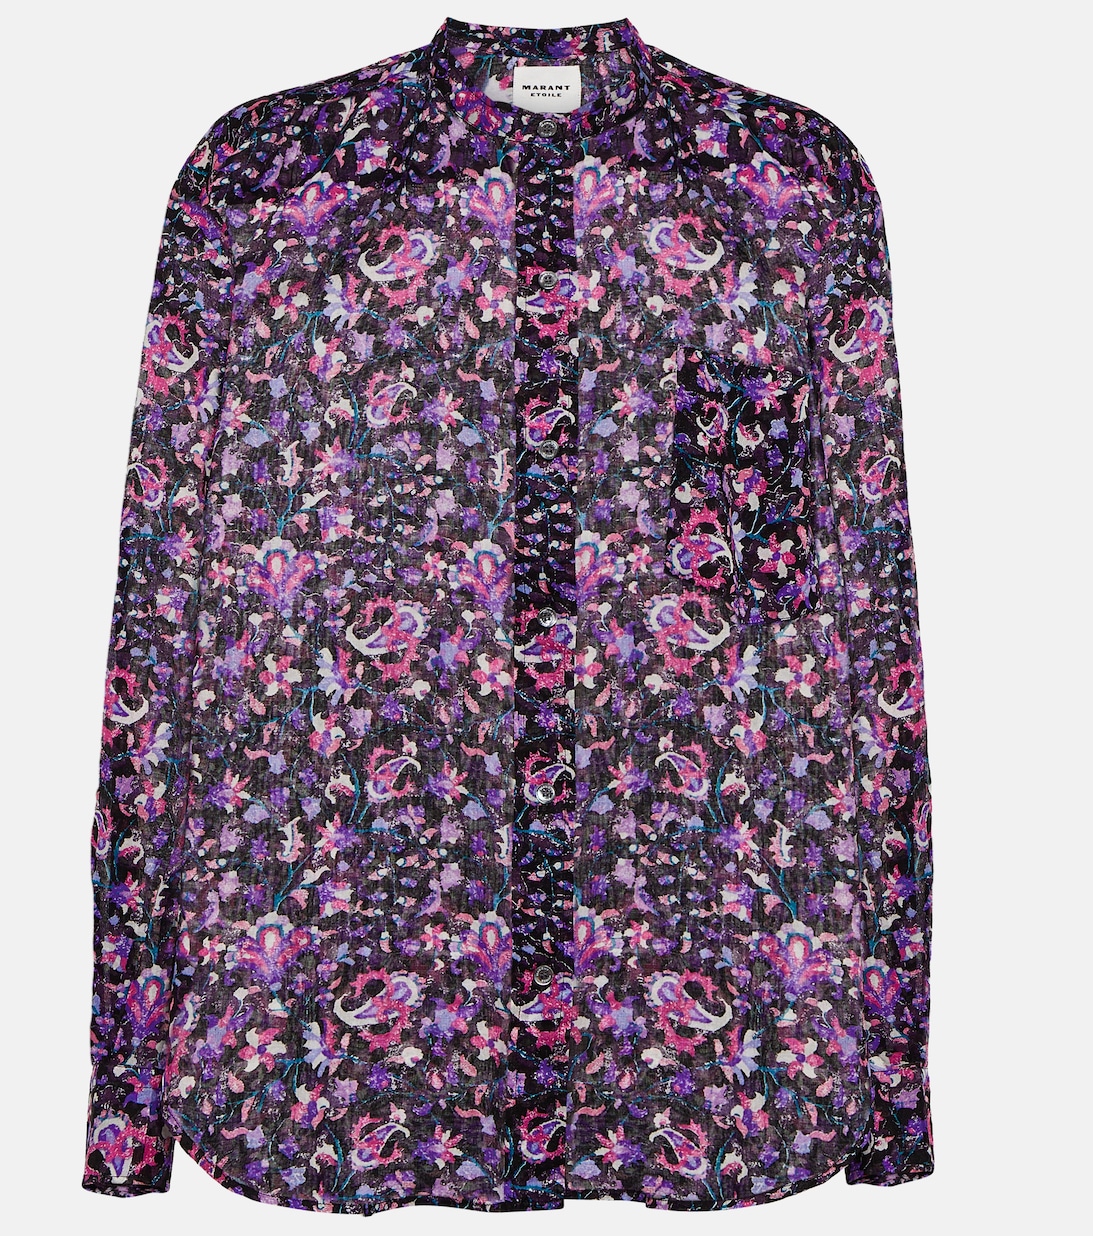 Хлопковая блузка с цветочным принтом MARANT ETOILE, разноцветный блузка с цветочным принтом xs разноцветный